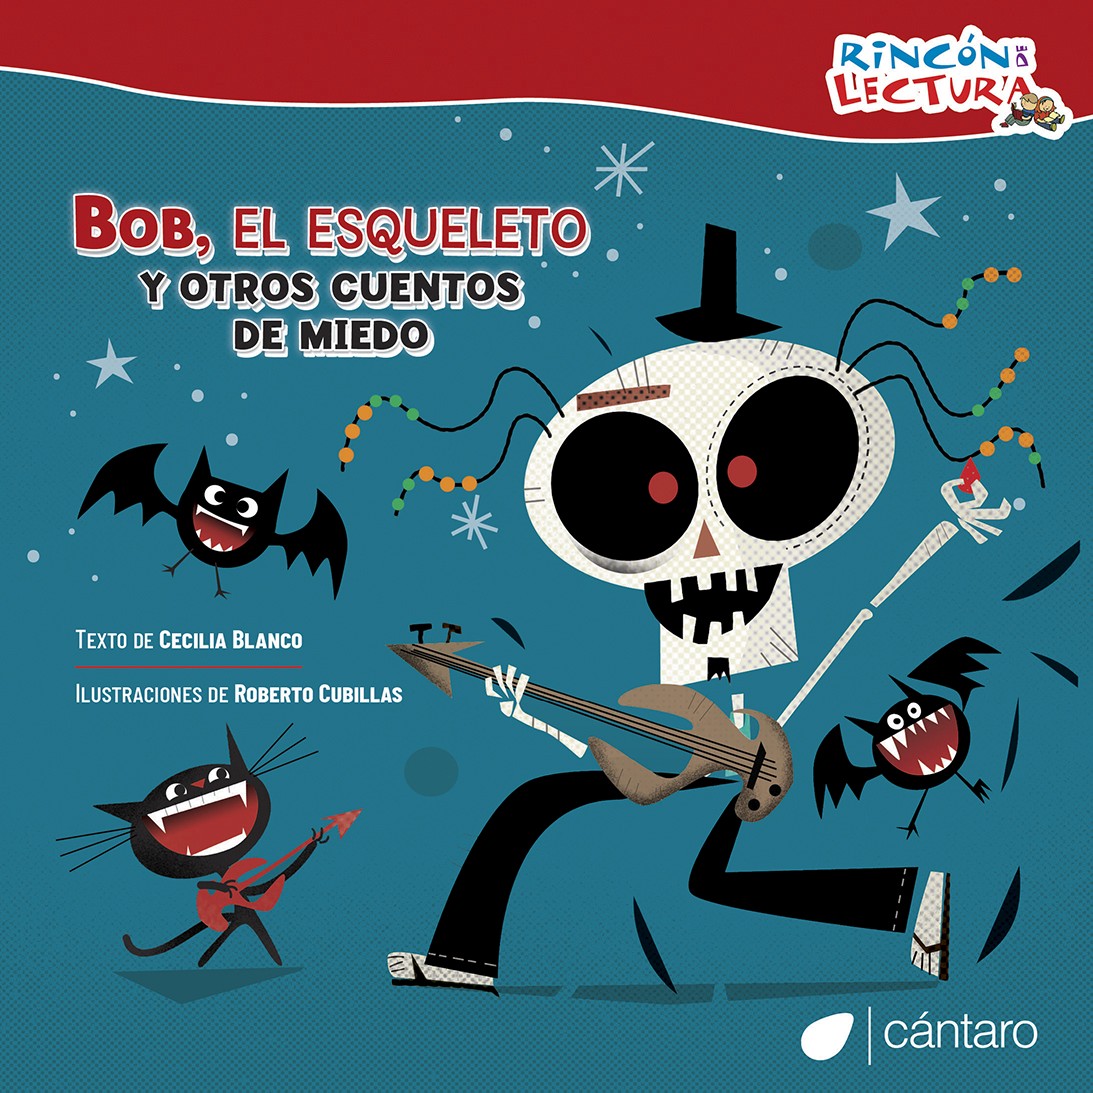 Bob, el esqueleto, y otros cuentos de miedo